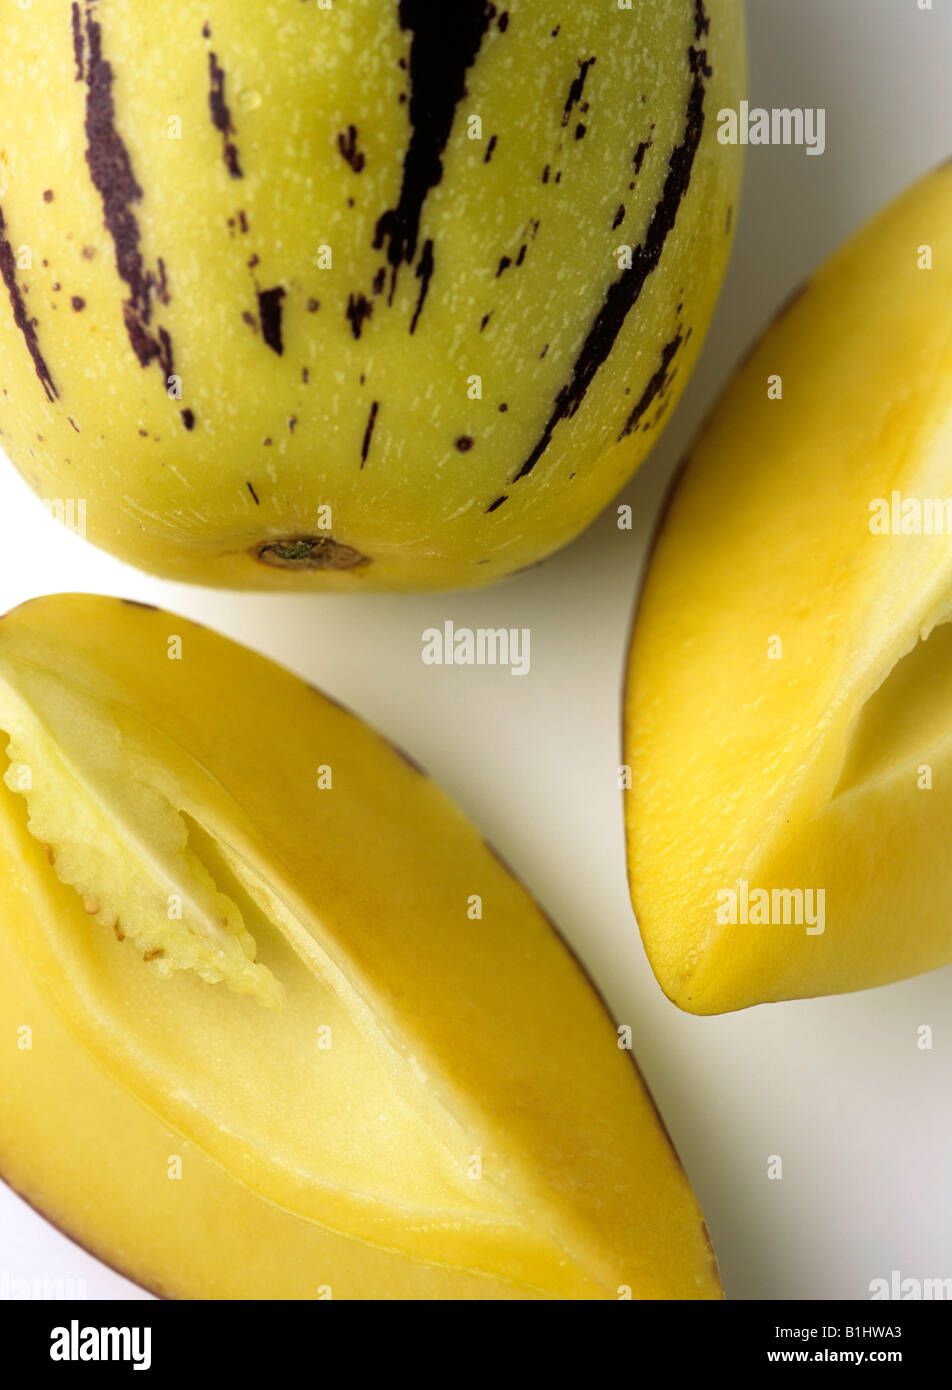 Pepino melon (Solanum muricatum) Stock Photo